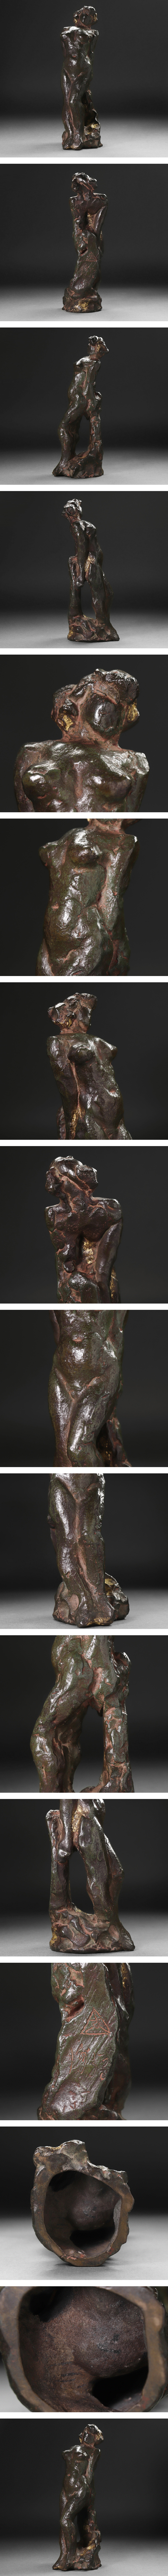 ☆超美品∇花∇作 1953年作品 ブロンズもたれる裸婦像 高さ25.5cm ◇21 西洋彫刻